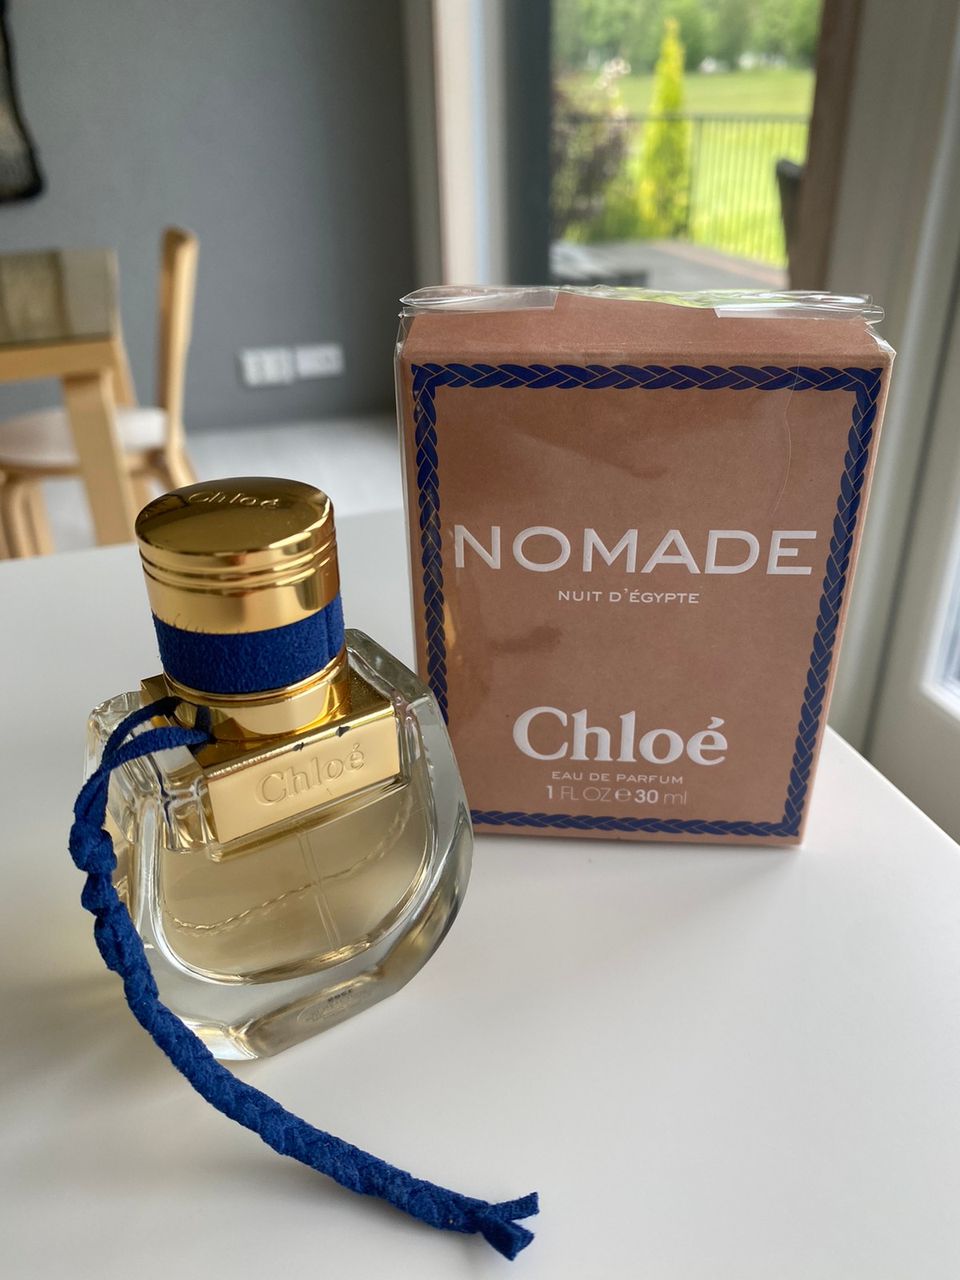 Chloé Nomade Nuit d'Egypte Eau De Parfum 30ml